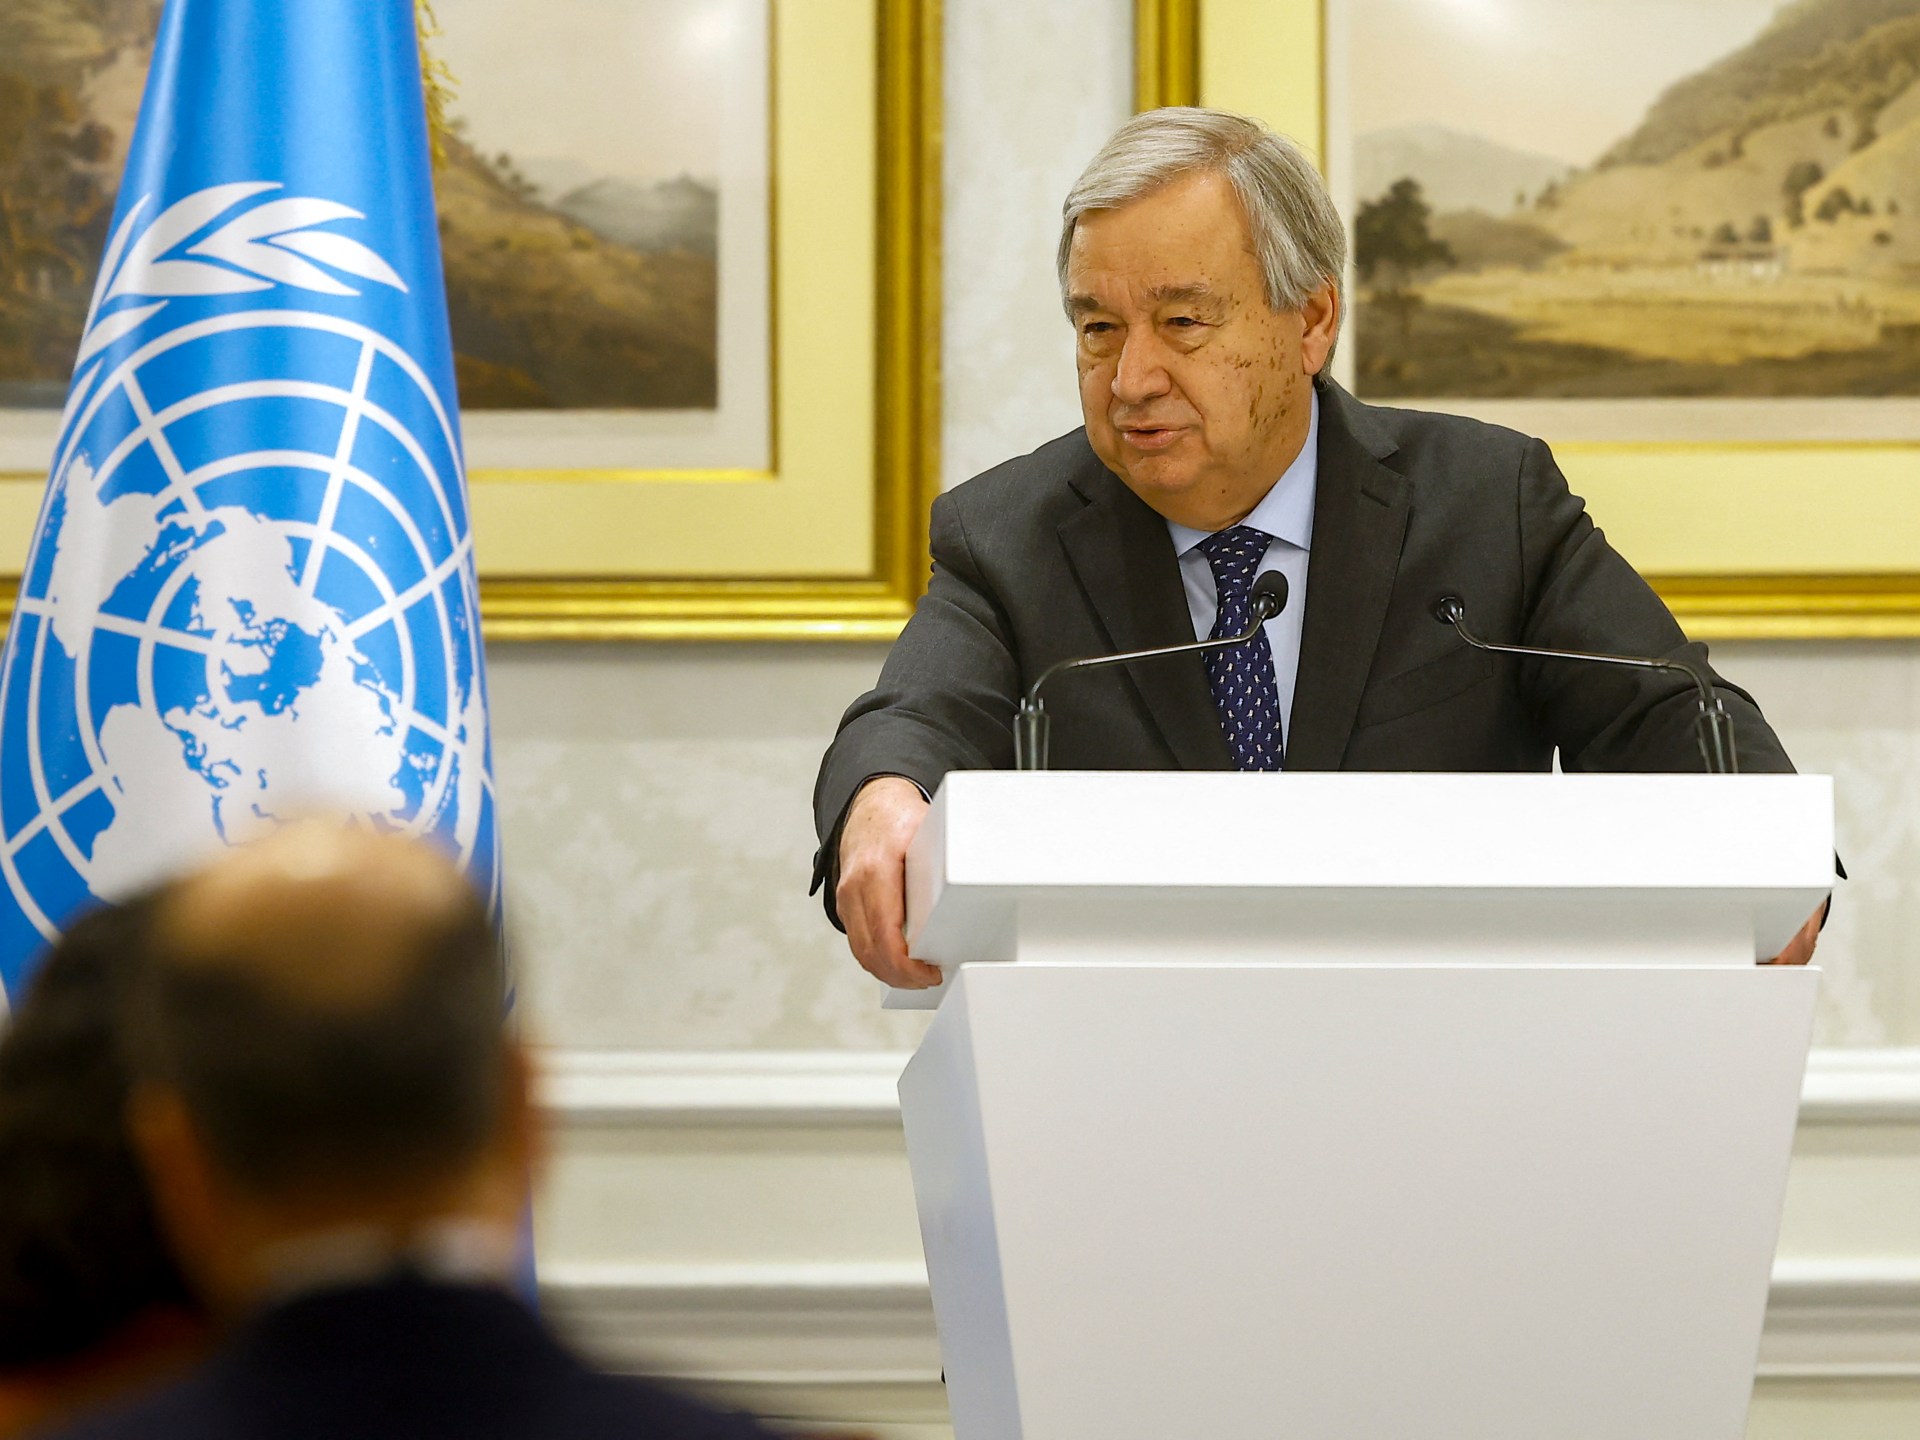 Las condiciones de los talibanes para asistir a la reunión de la ONU son “inaceptables”, dice Guterres CINEINFO12